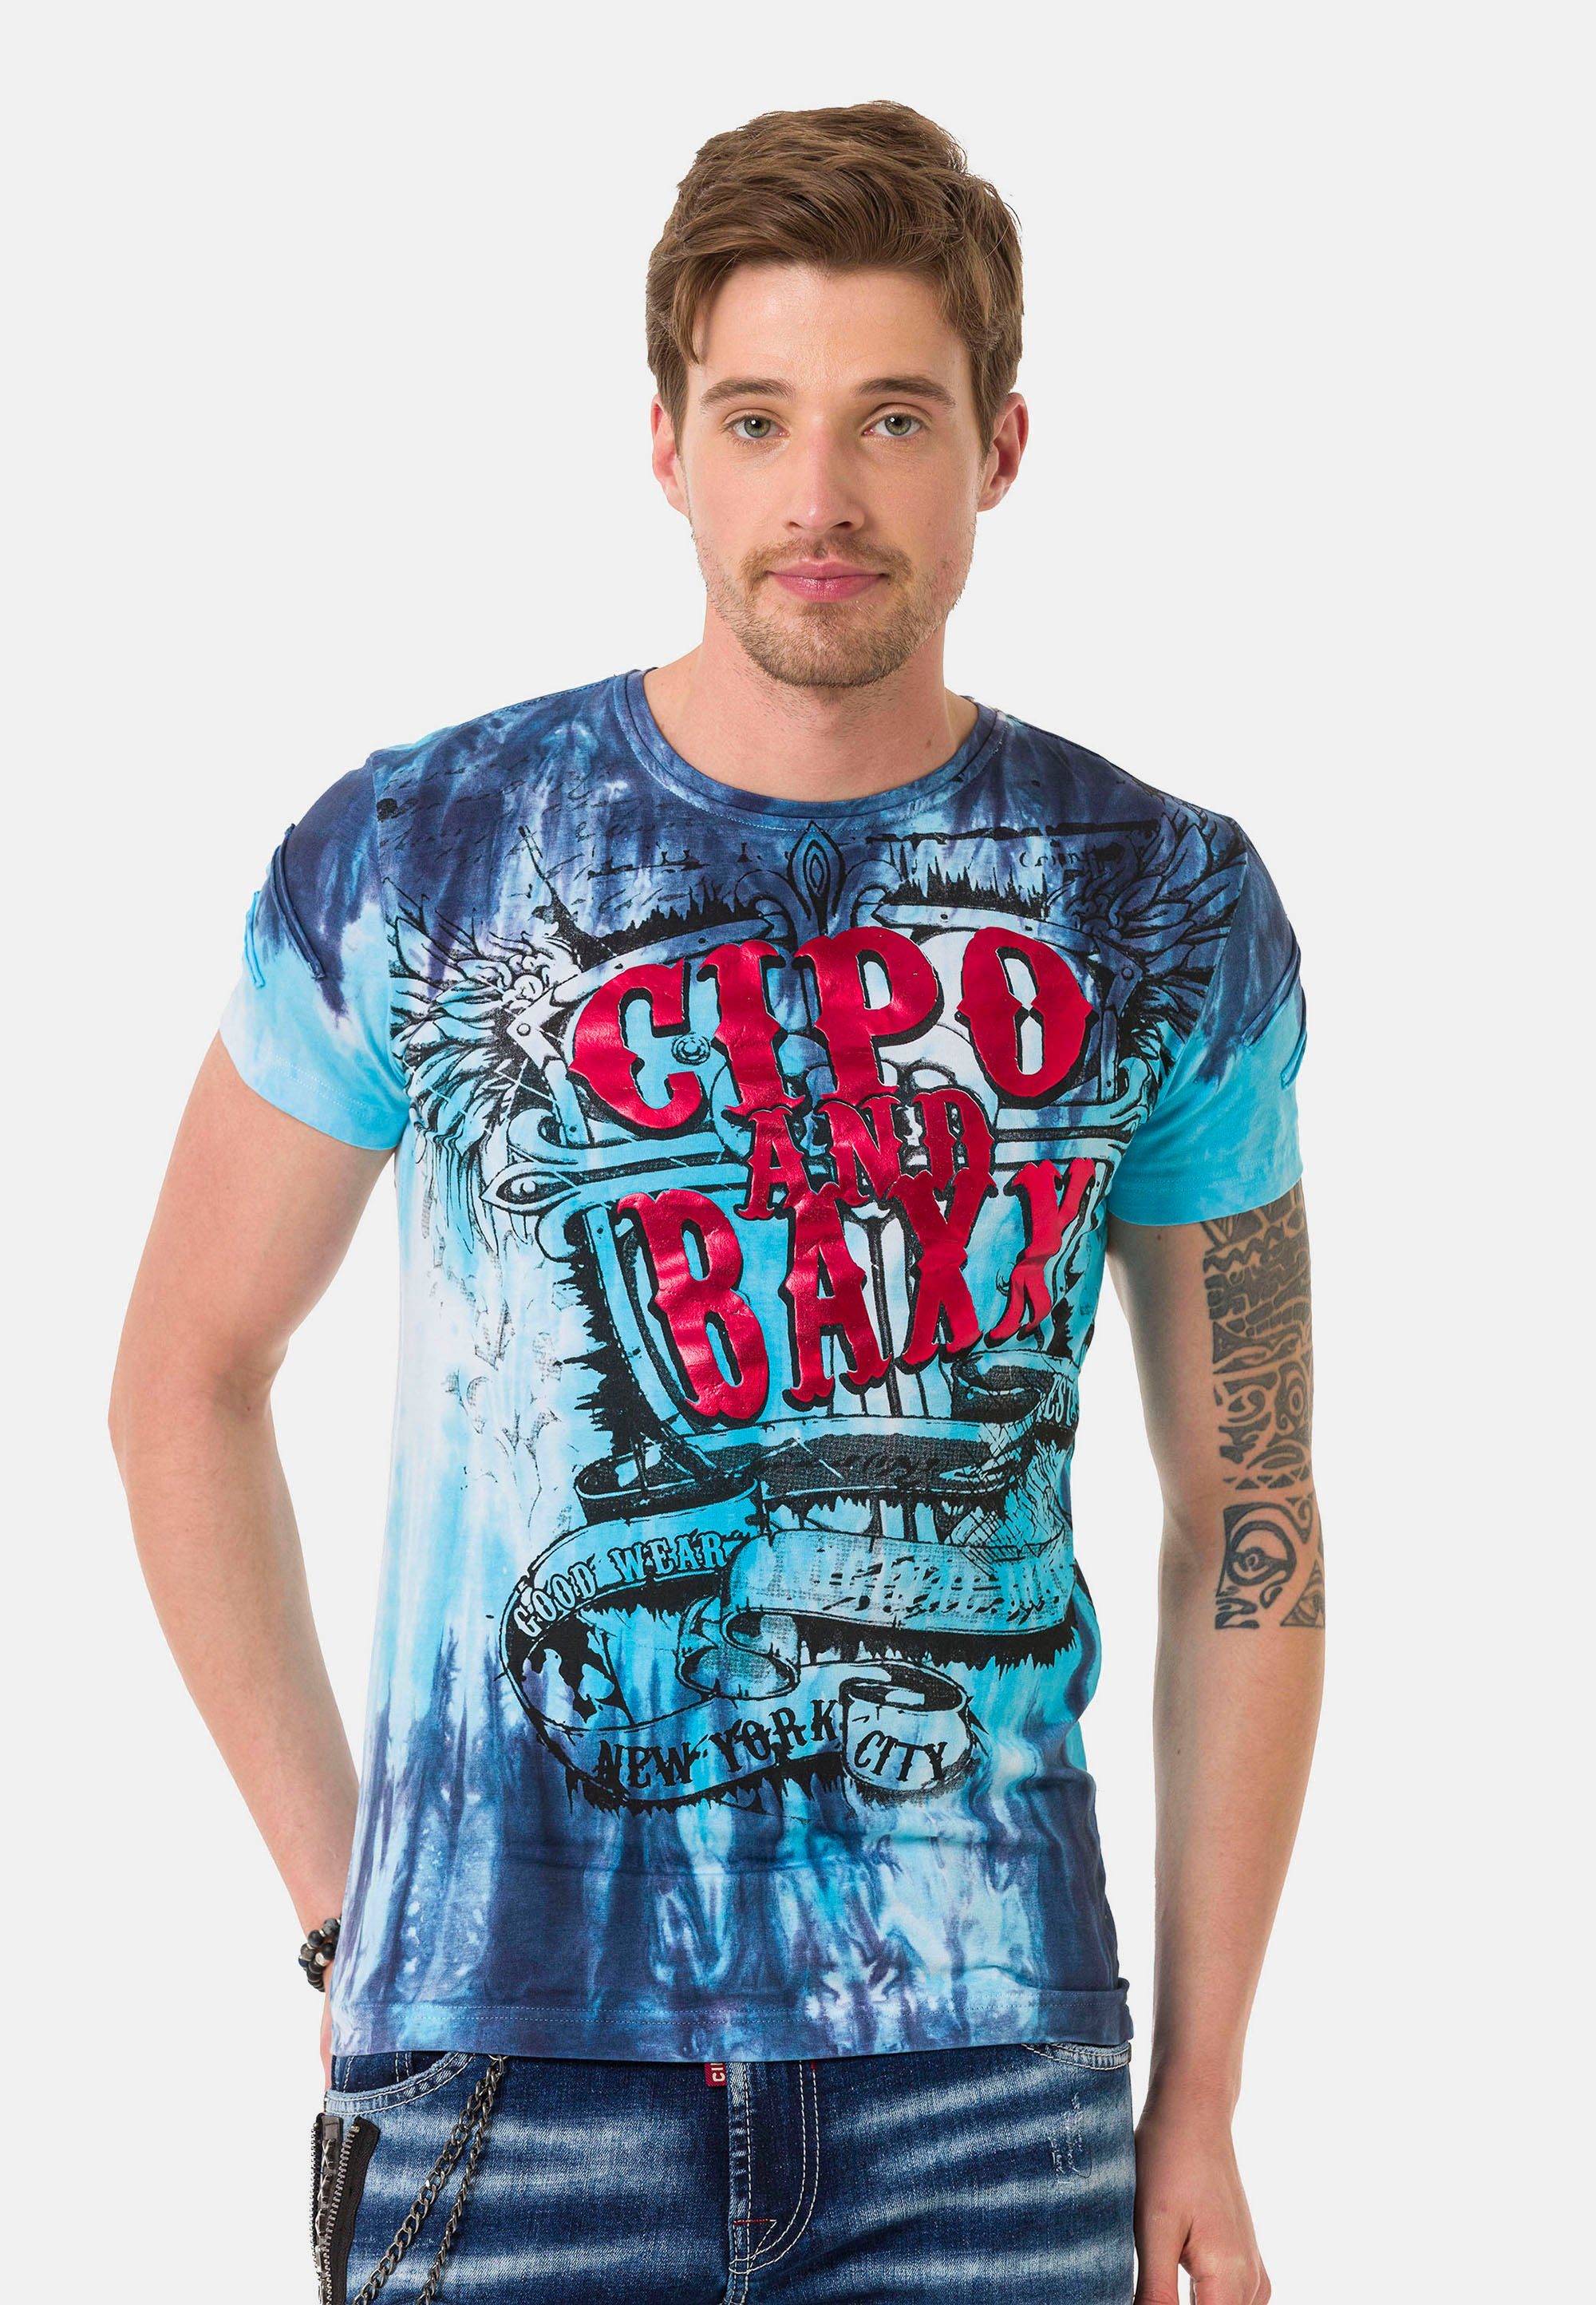 Cipo & mit großen blau-pink Baxx T-Shirt Schriftzugprints